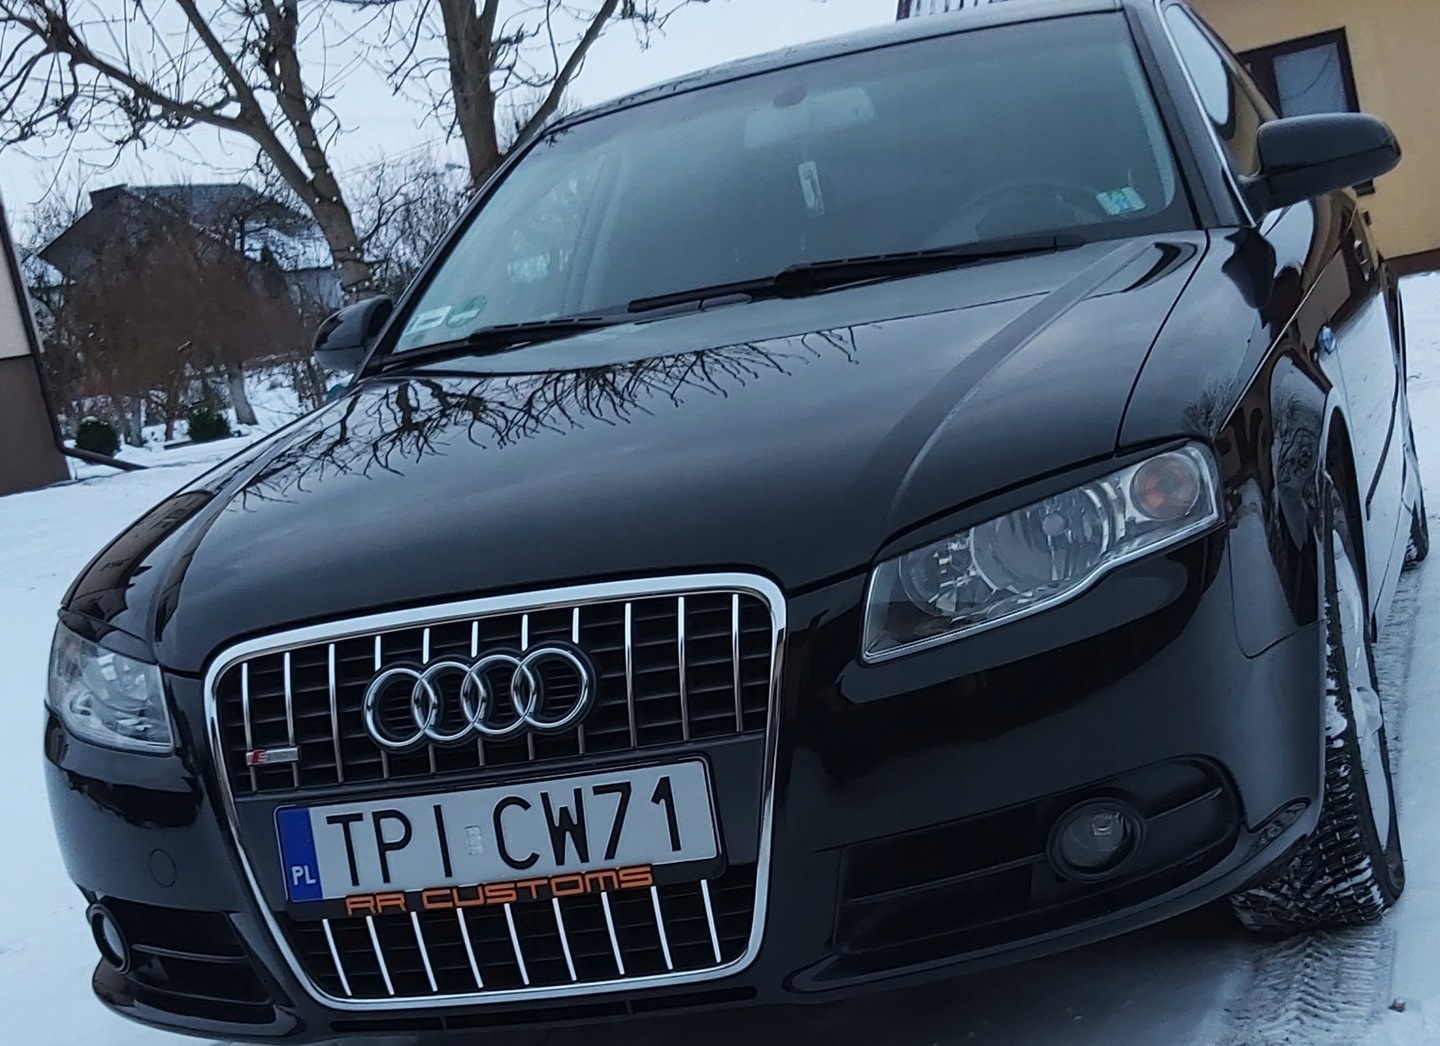 pirkti №5, Audi a4 b7 s-line moldingai chromas grilis priekines groteles tuning